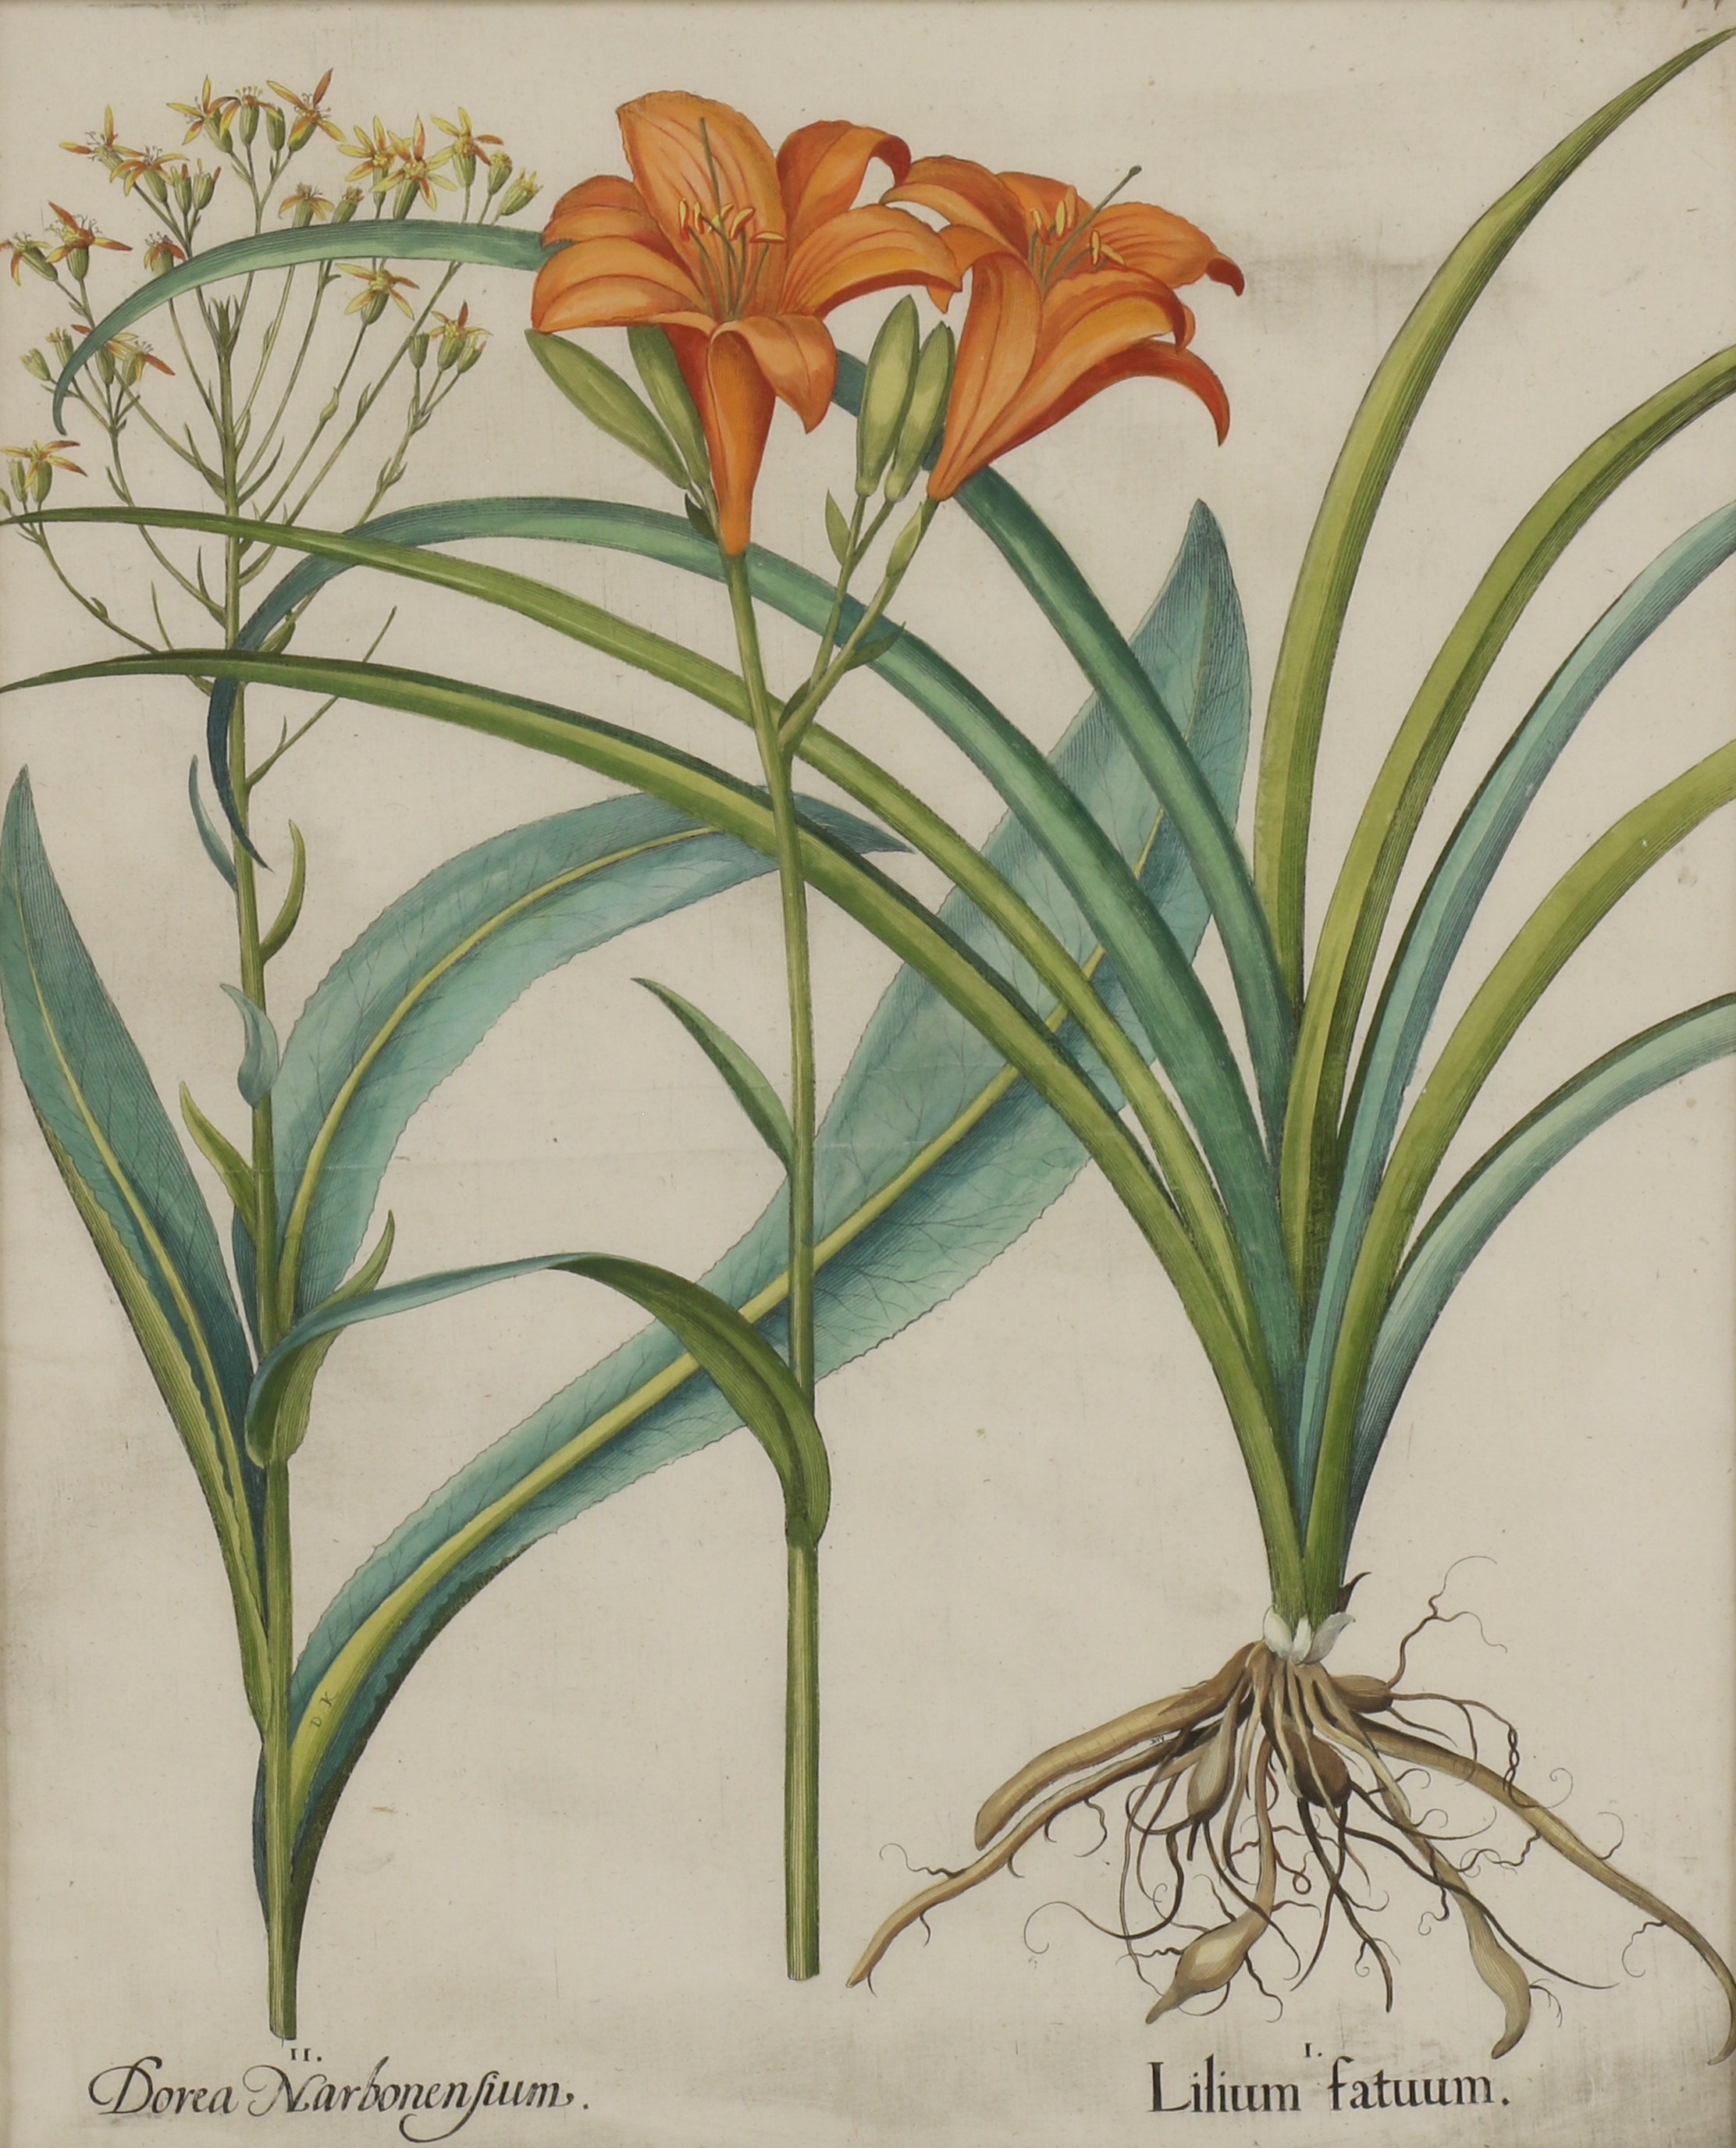 Artwork by Basilius Besler, Strich Nodendron; Piper Indicum filiquis flavis; Lilium fatuum; Caryophyllus maior indic, florae multiplice aureo, Made of hand coloured engravings